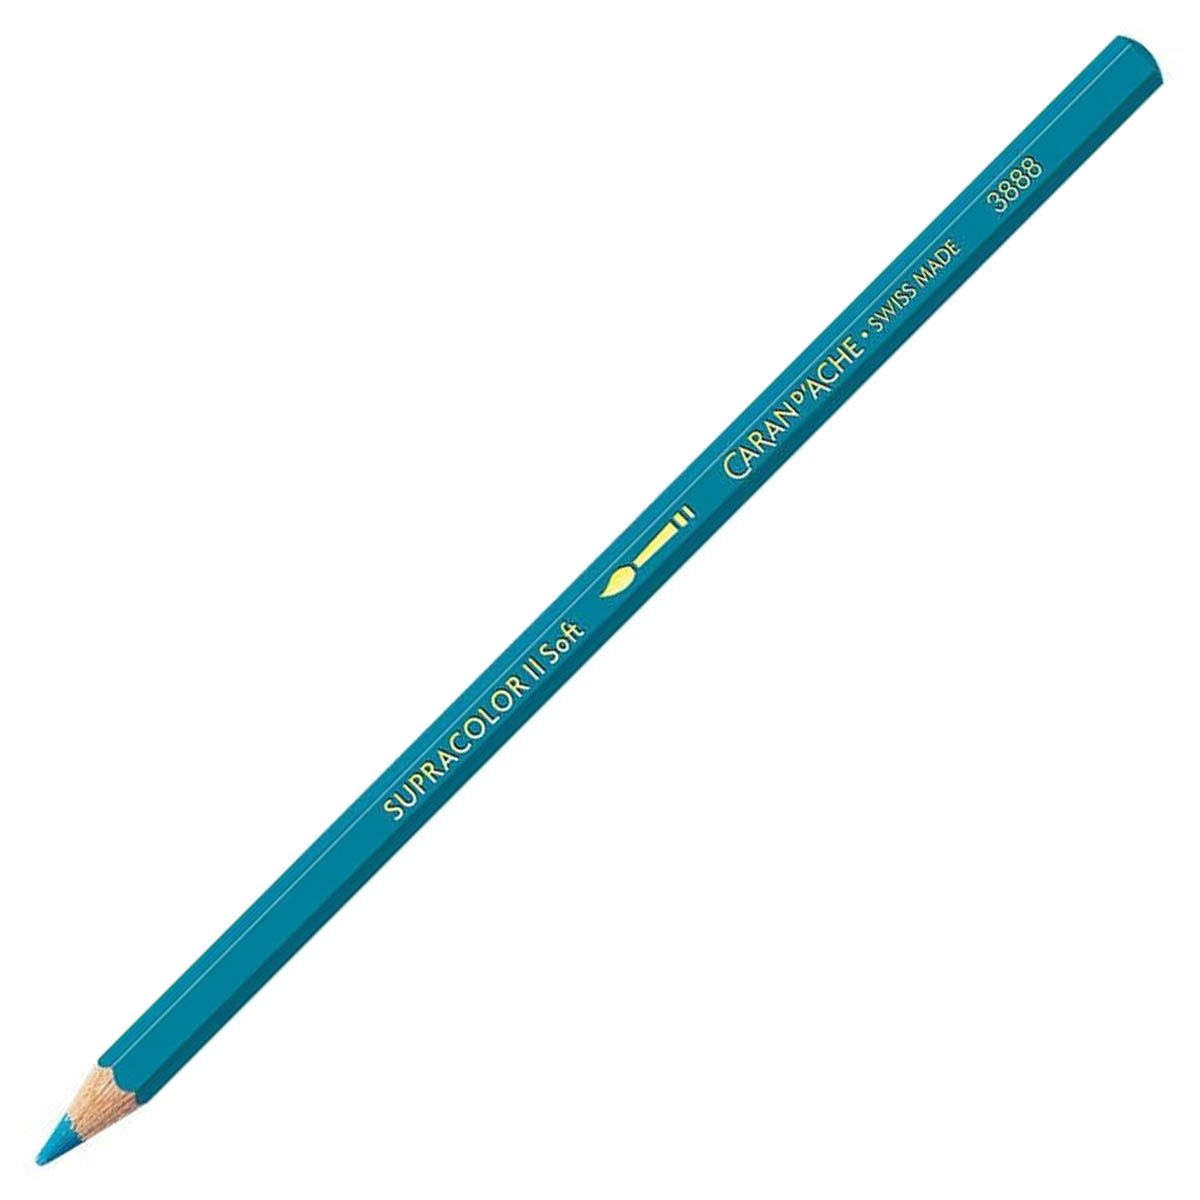 Caran d'Ache Supracolor ll Soft Aquarelle Pencil - Cobalt Blue 160